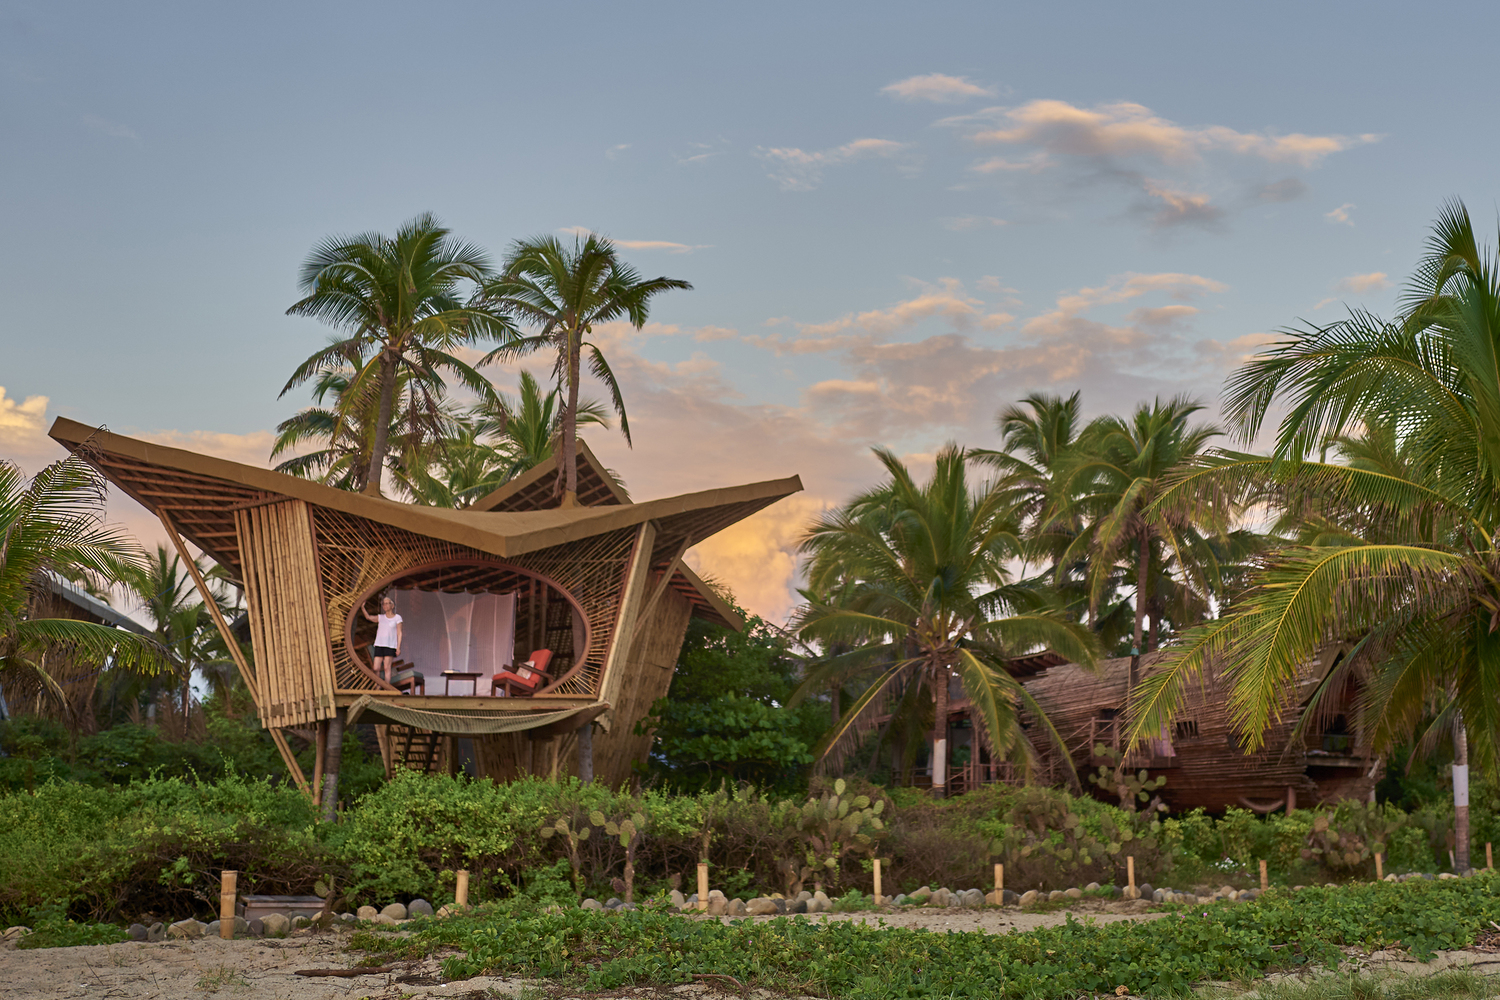 Resort en México tiene casas de árboles de bambú rodeadas de naturaleza